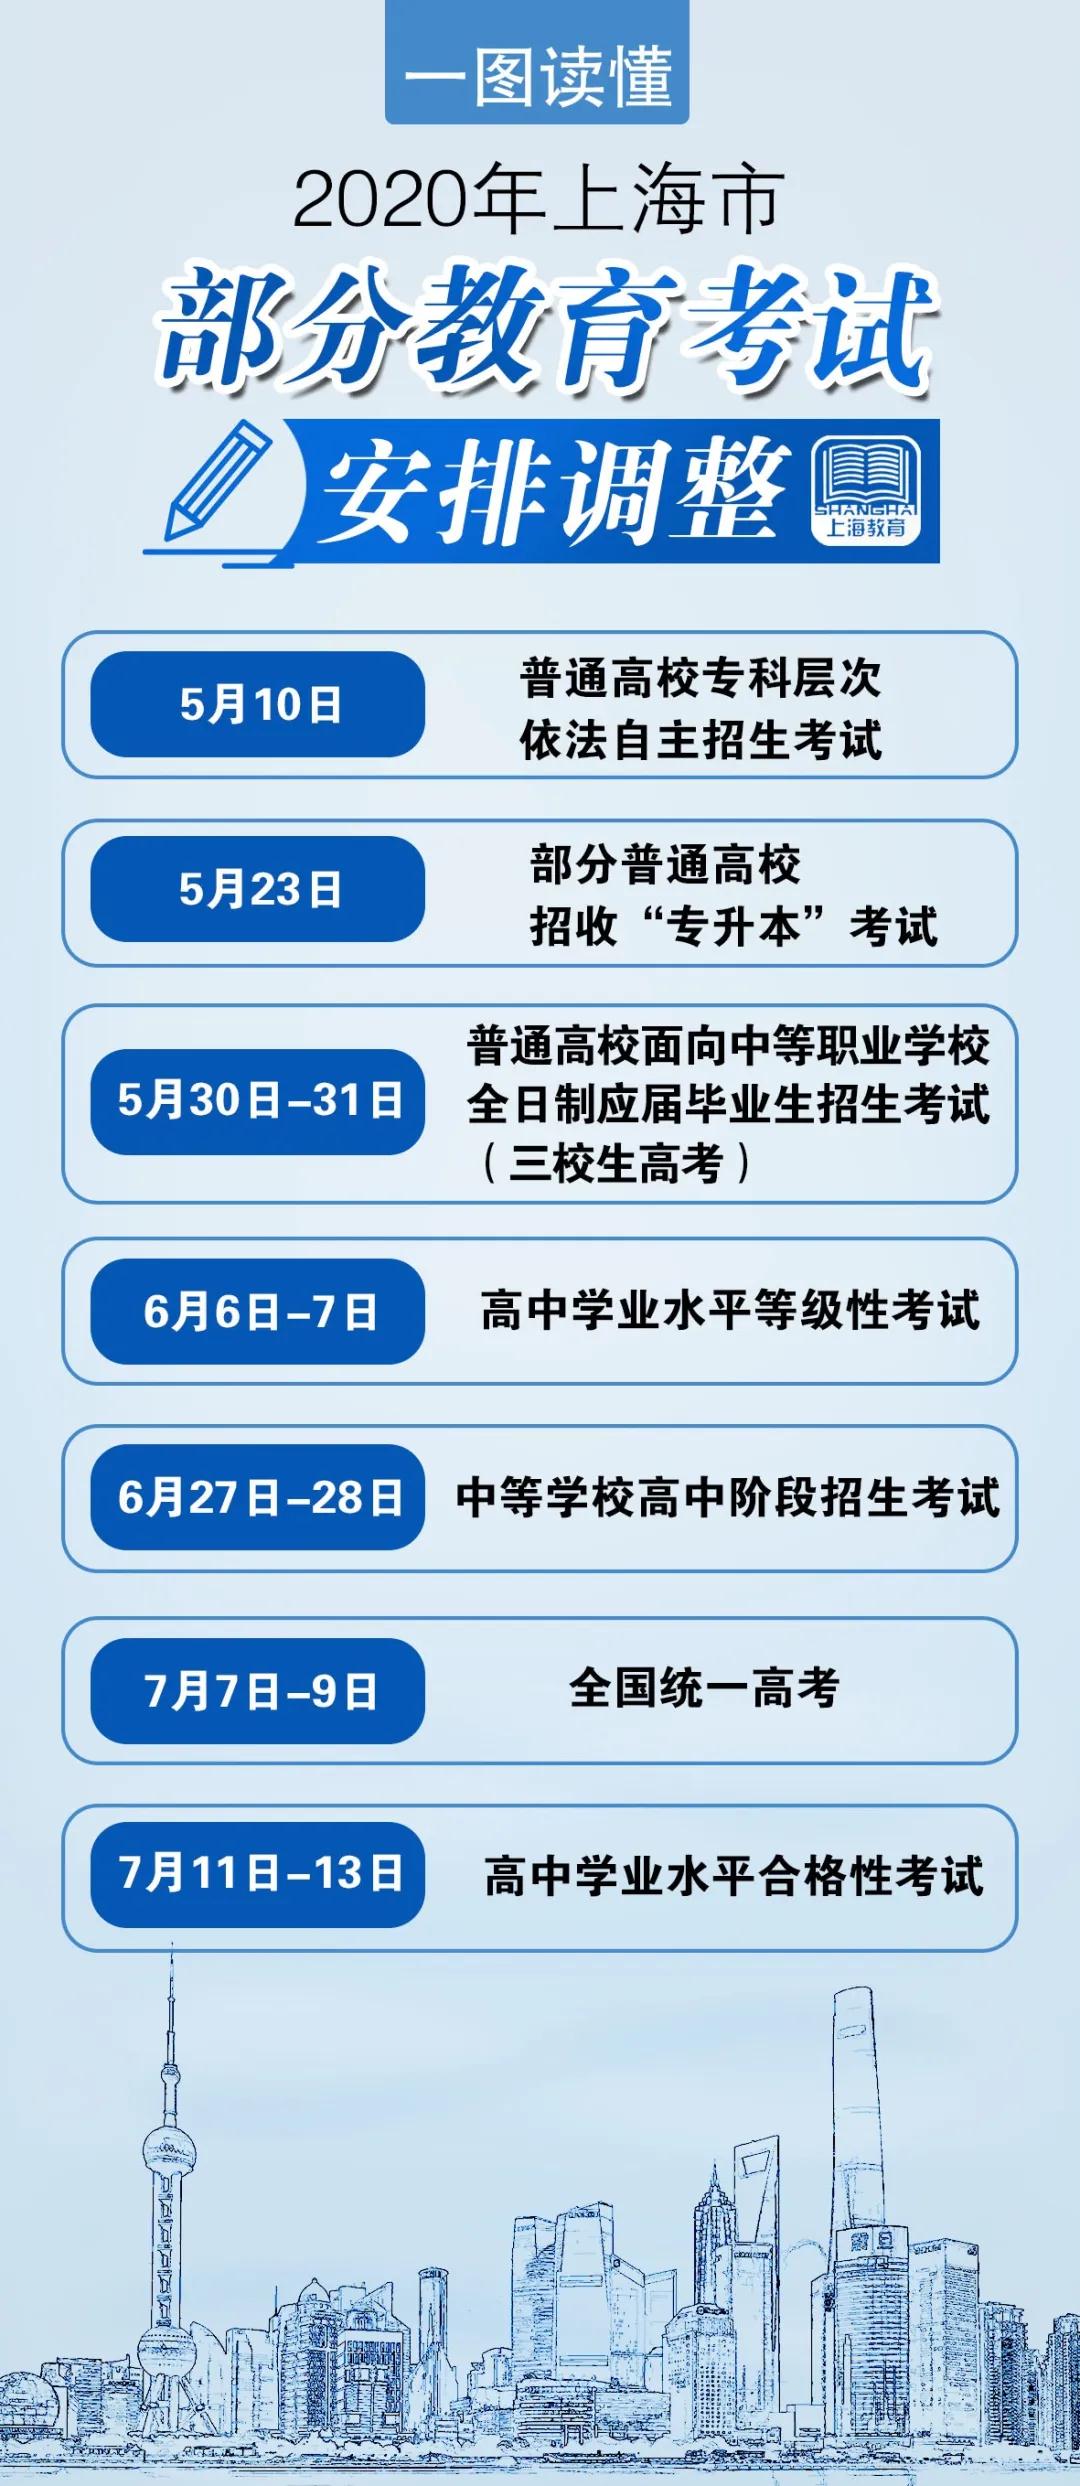 2020年上海市部分教育考试安排调整